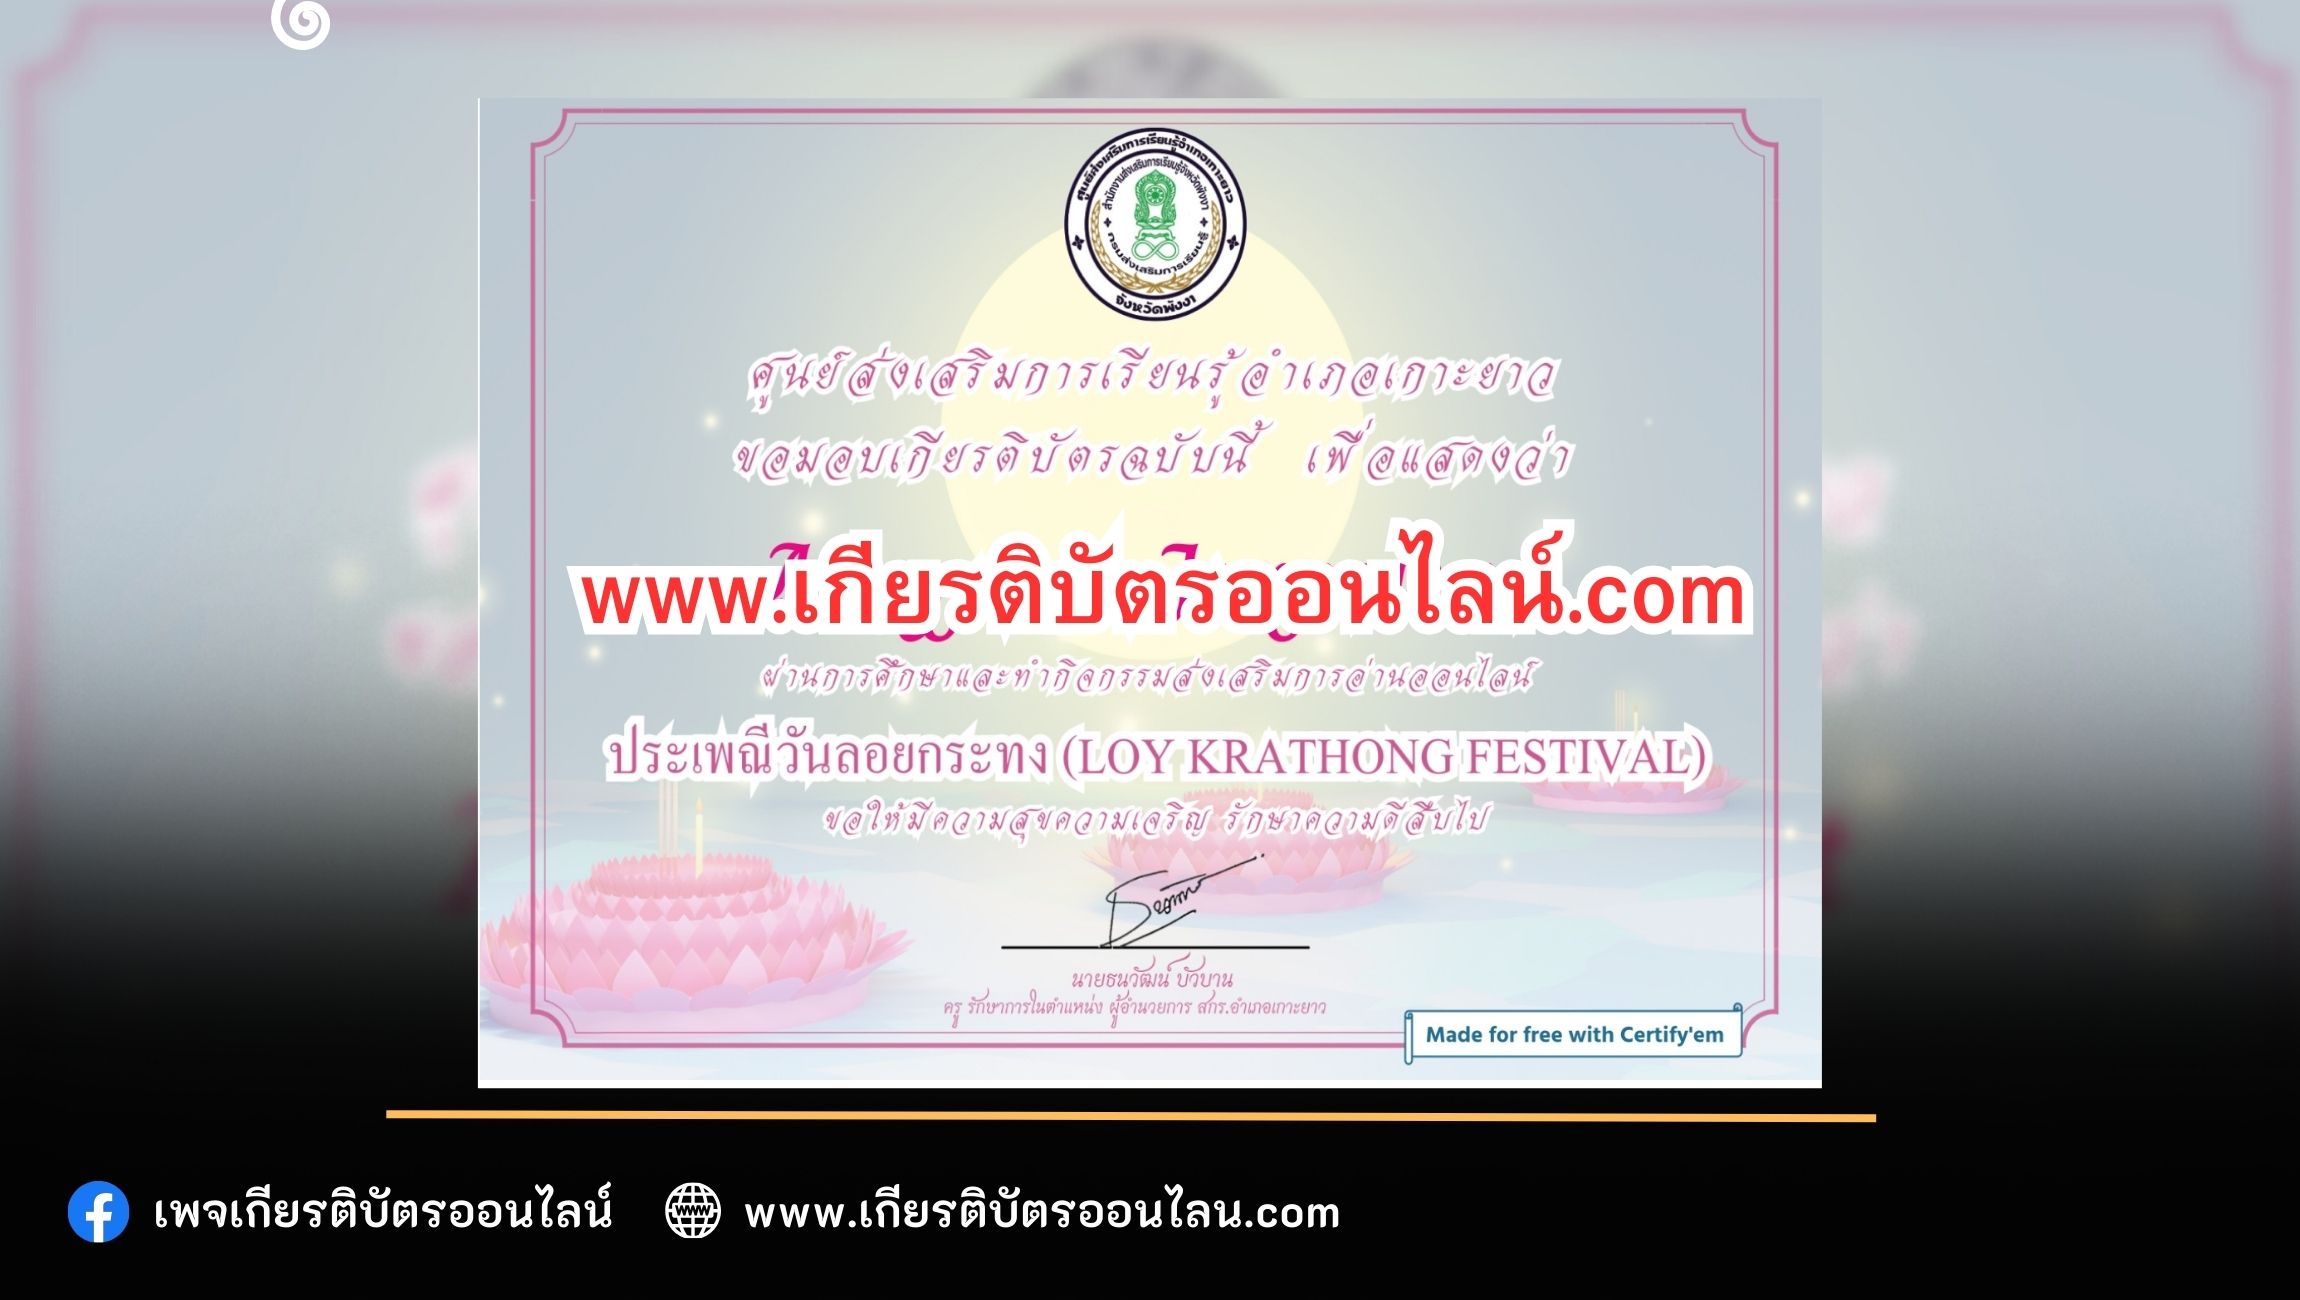 เกียรติบัตรออนไลน์ฟรี ครู นักเรียน นักศึกษา มหาวิทยาลัย กิจกรรมส่งเสริมการอ่าน ประเพณีวันลอยกระทง (Loy Krathong Festival)